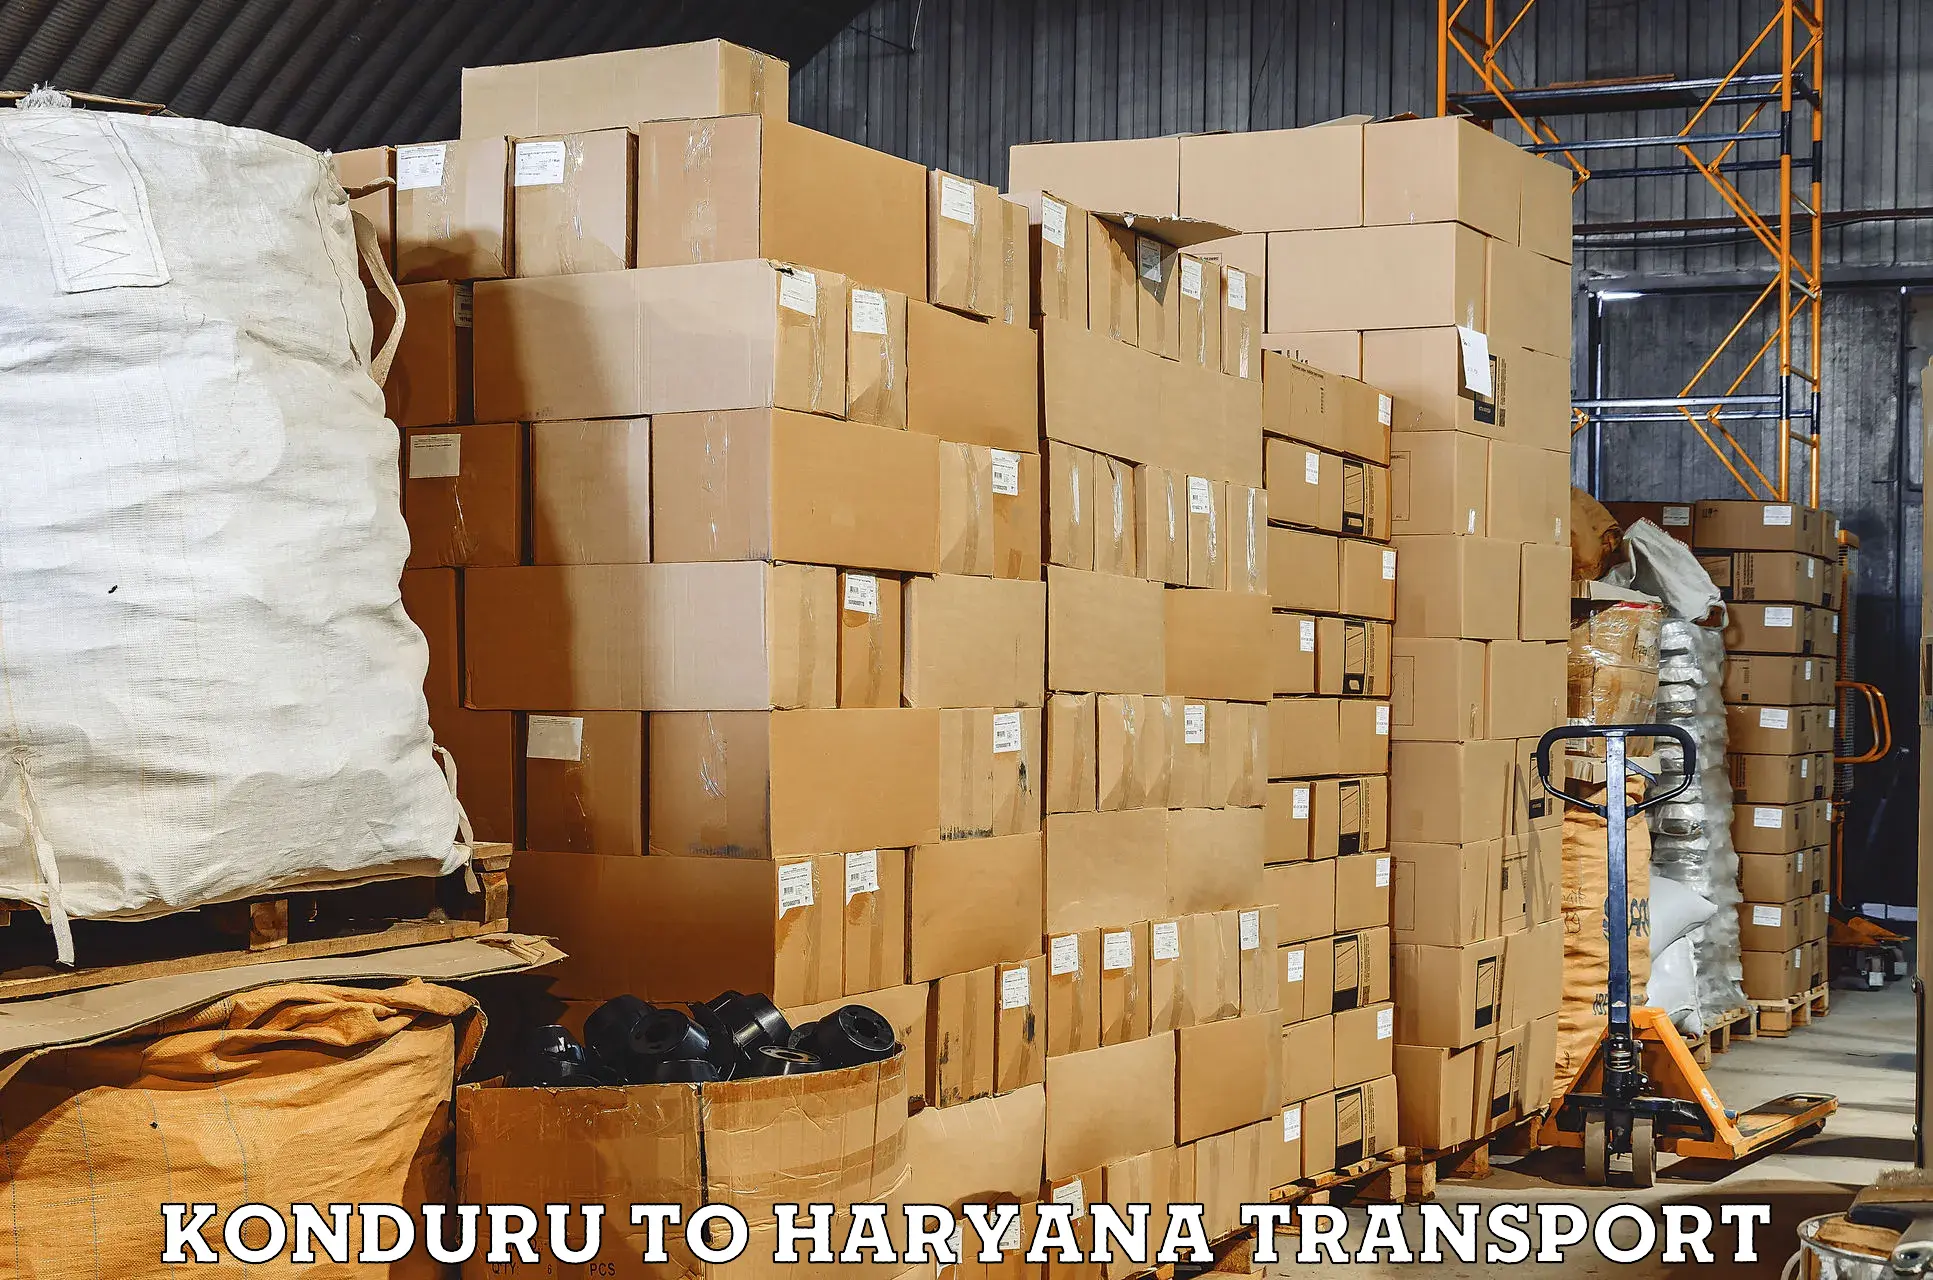 Pick up transport service Konduru to Hansi